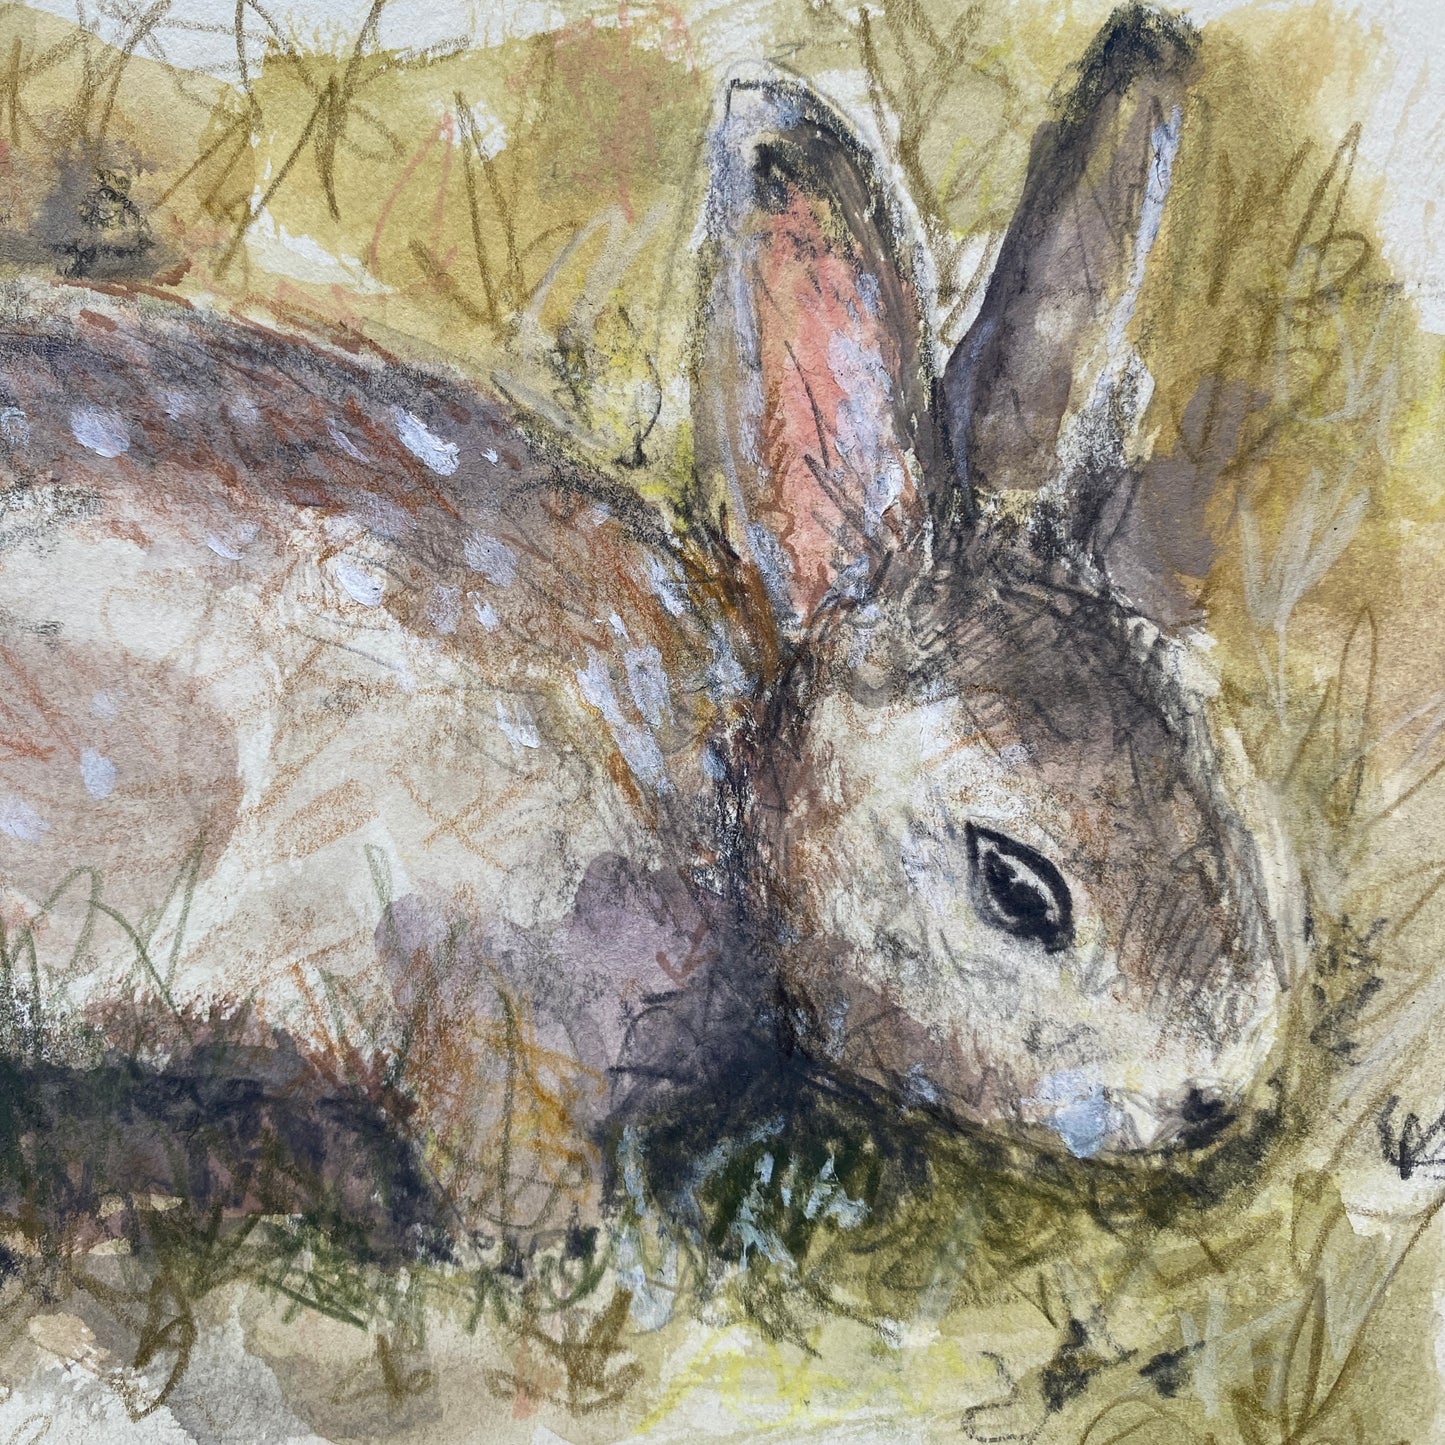 Rabbit in Hedgerow Sketch.